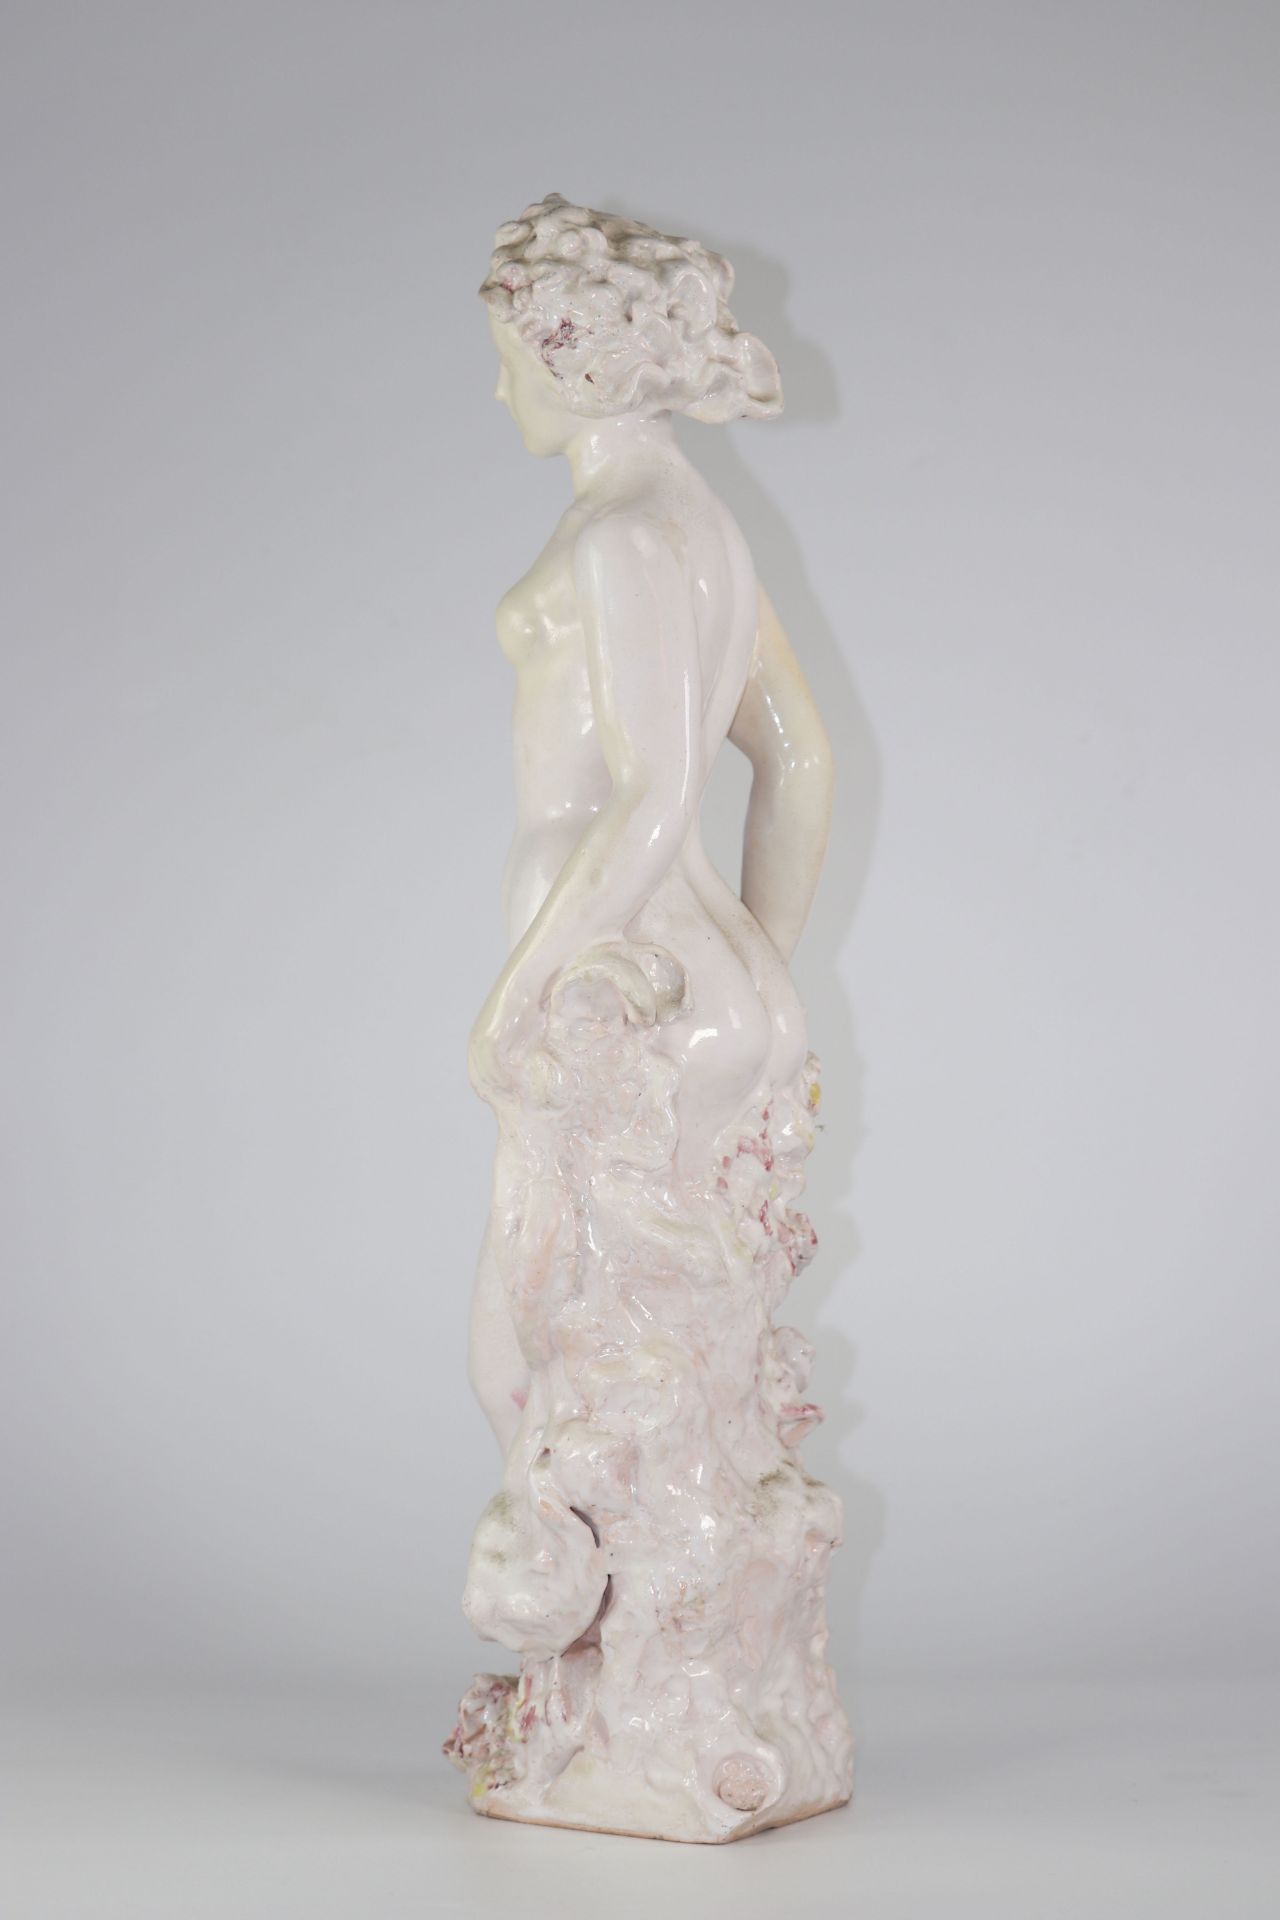 PAUL POUCHOL (1904-1963) Important enamelled ceramic sculpture - Image 5 of 5